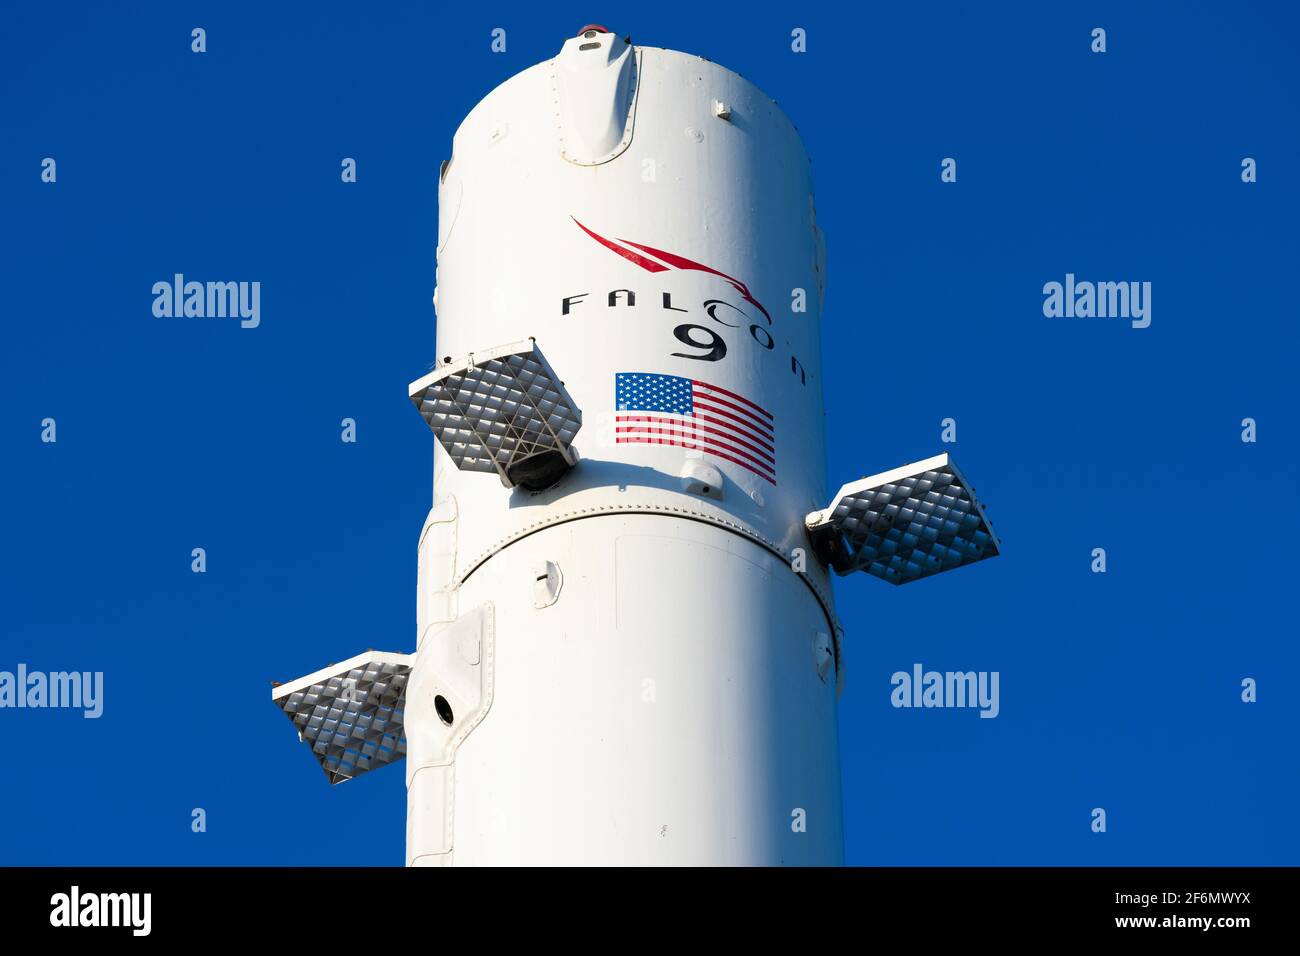 Cartel de Falcon 9 en el propulsor de cohetes mostrado en SpaceX, Space Exploration Technologies Corporation, sede central. SpaceX es un aeroespacial estadounidense privado Foto de stock